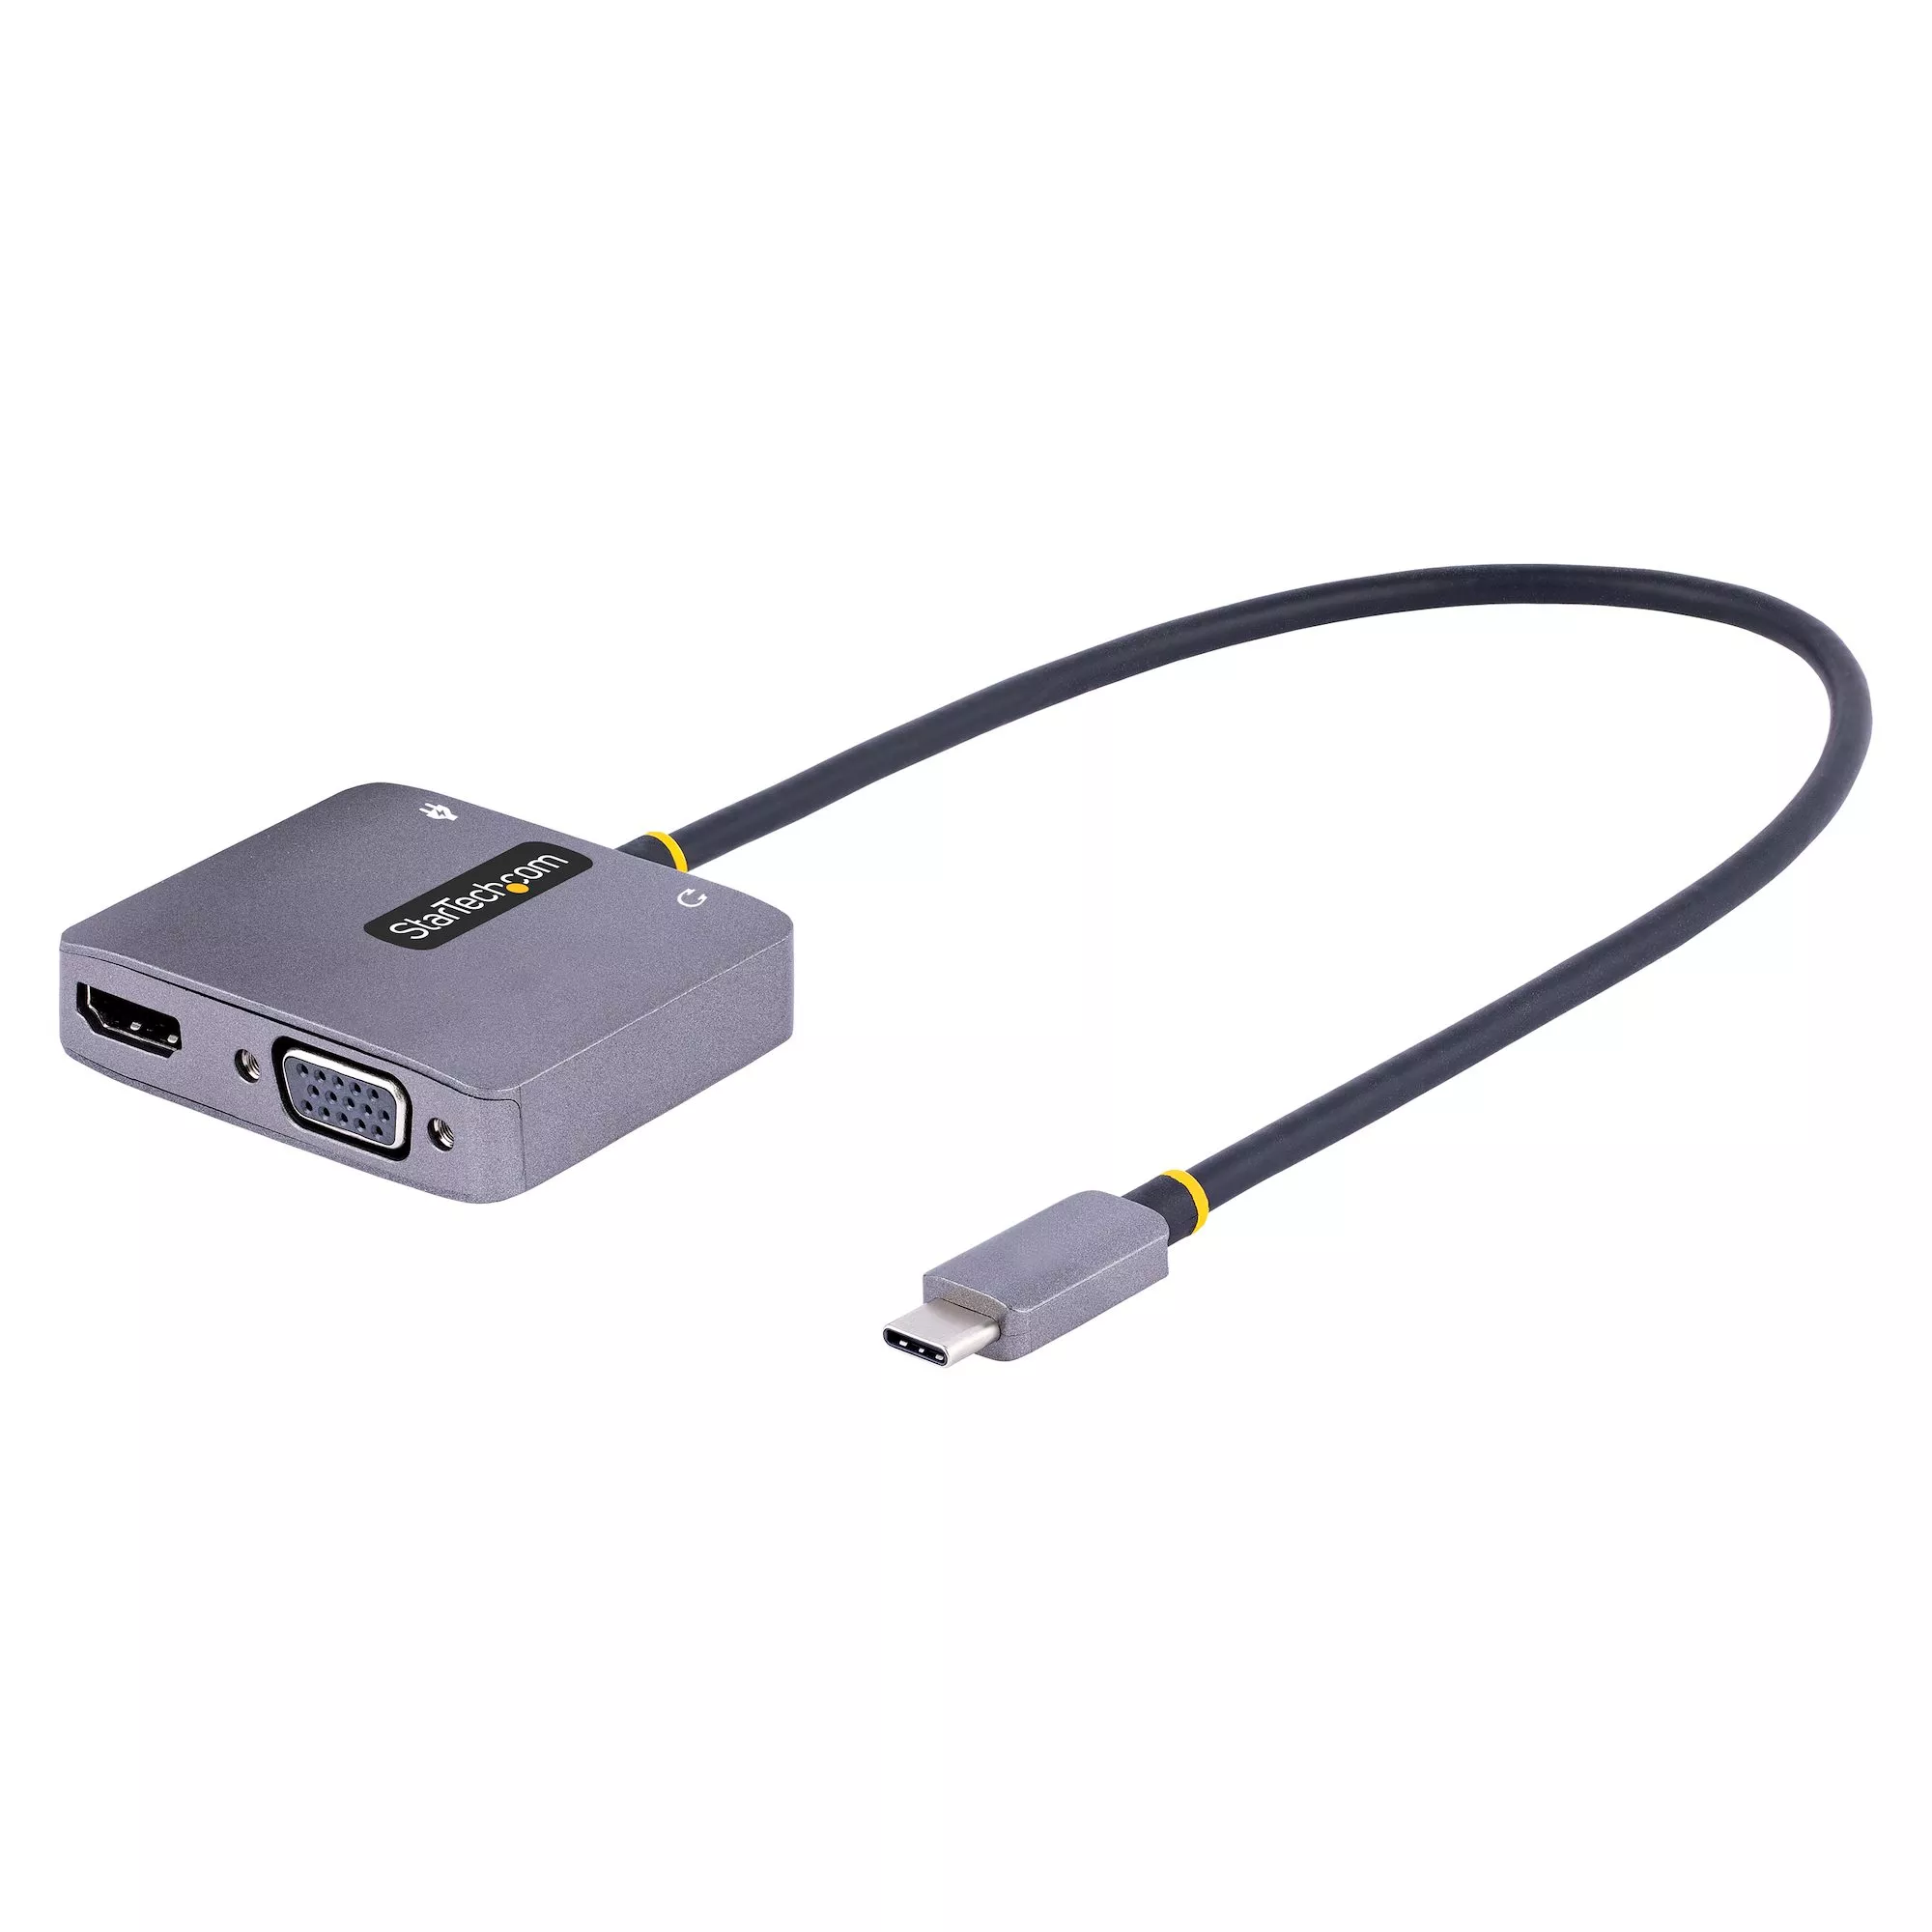 Achat StarTech.com Adaptateur USB C vers HDMI VGA avec Sortie au meilleur prix